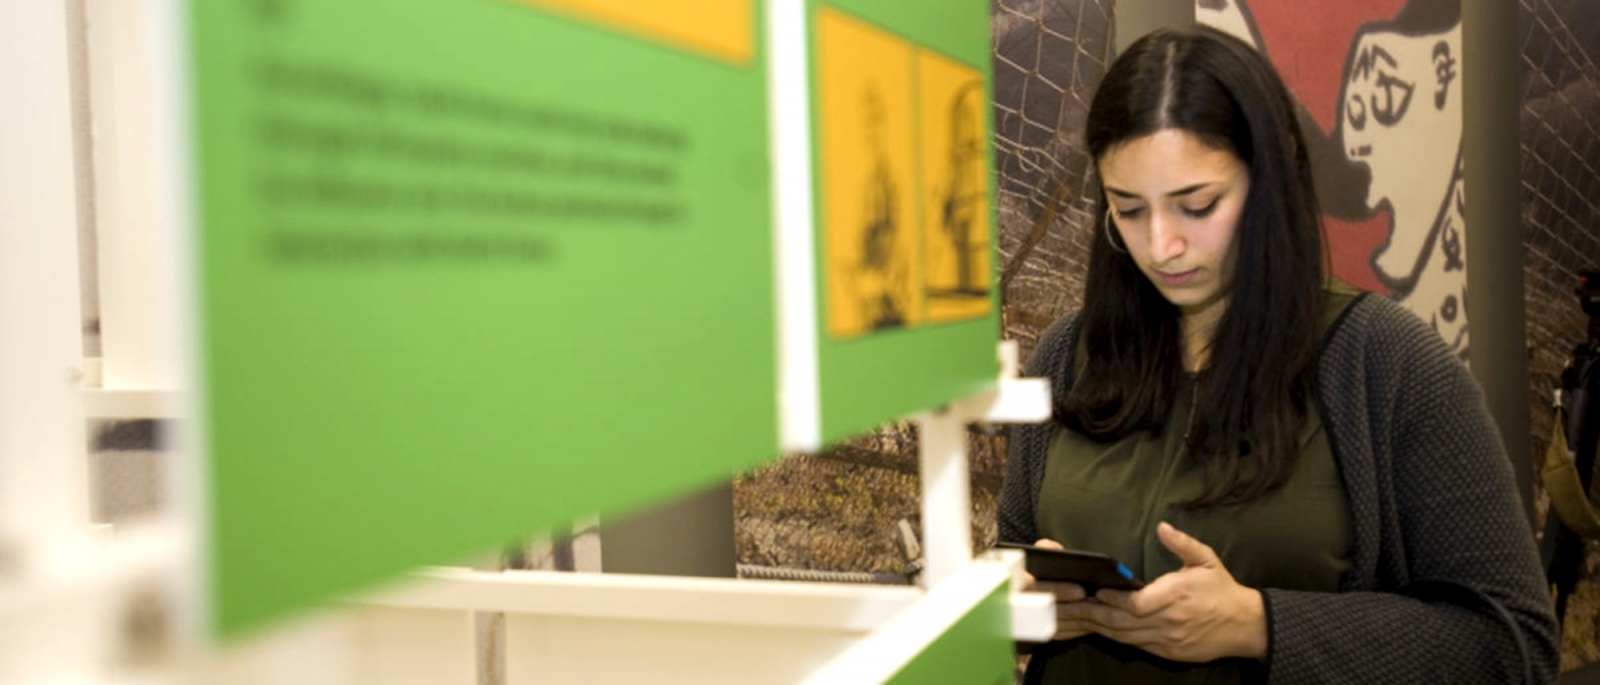 Eine junge Frau bedient ihr Smartphone in einer Ausstellung